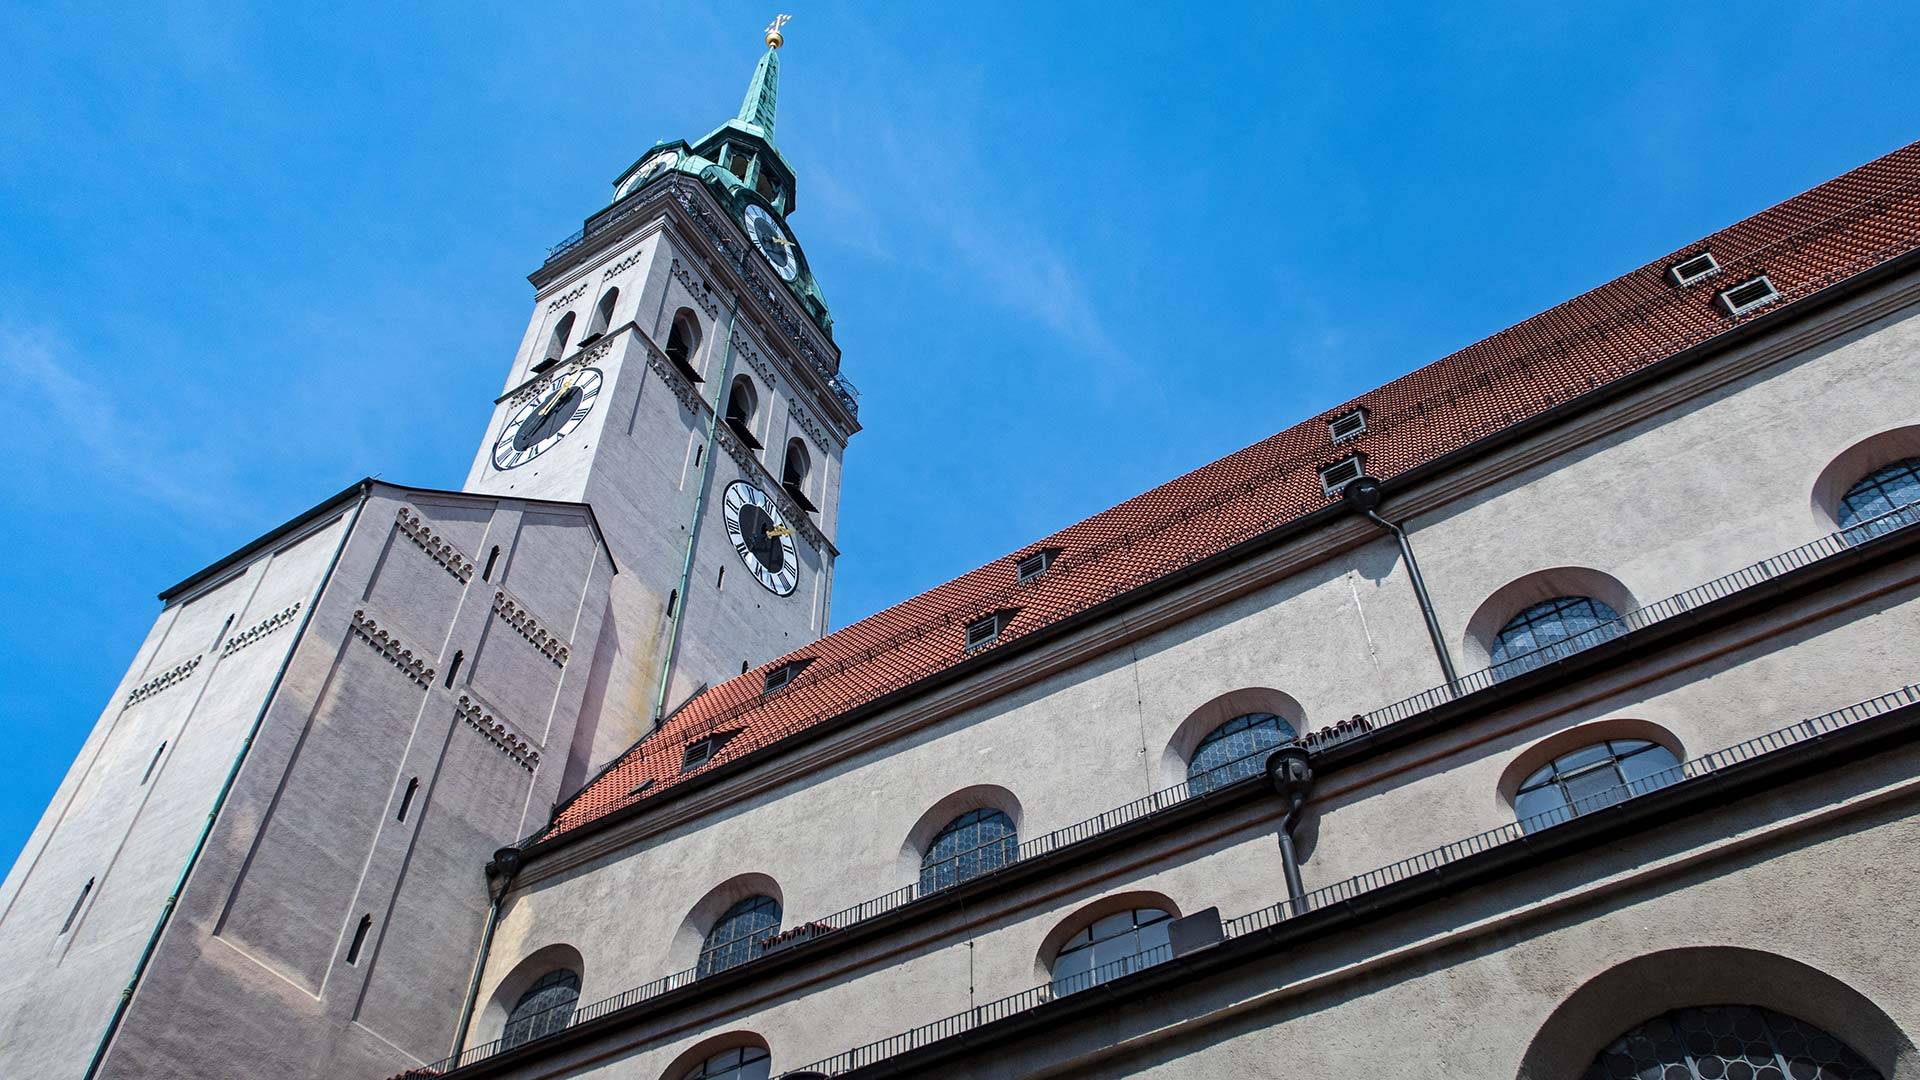 Церковь святого михаила в мюнхене — шедевр барокко и королевская усыпальница